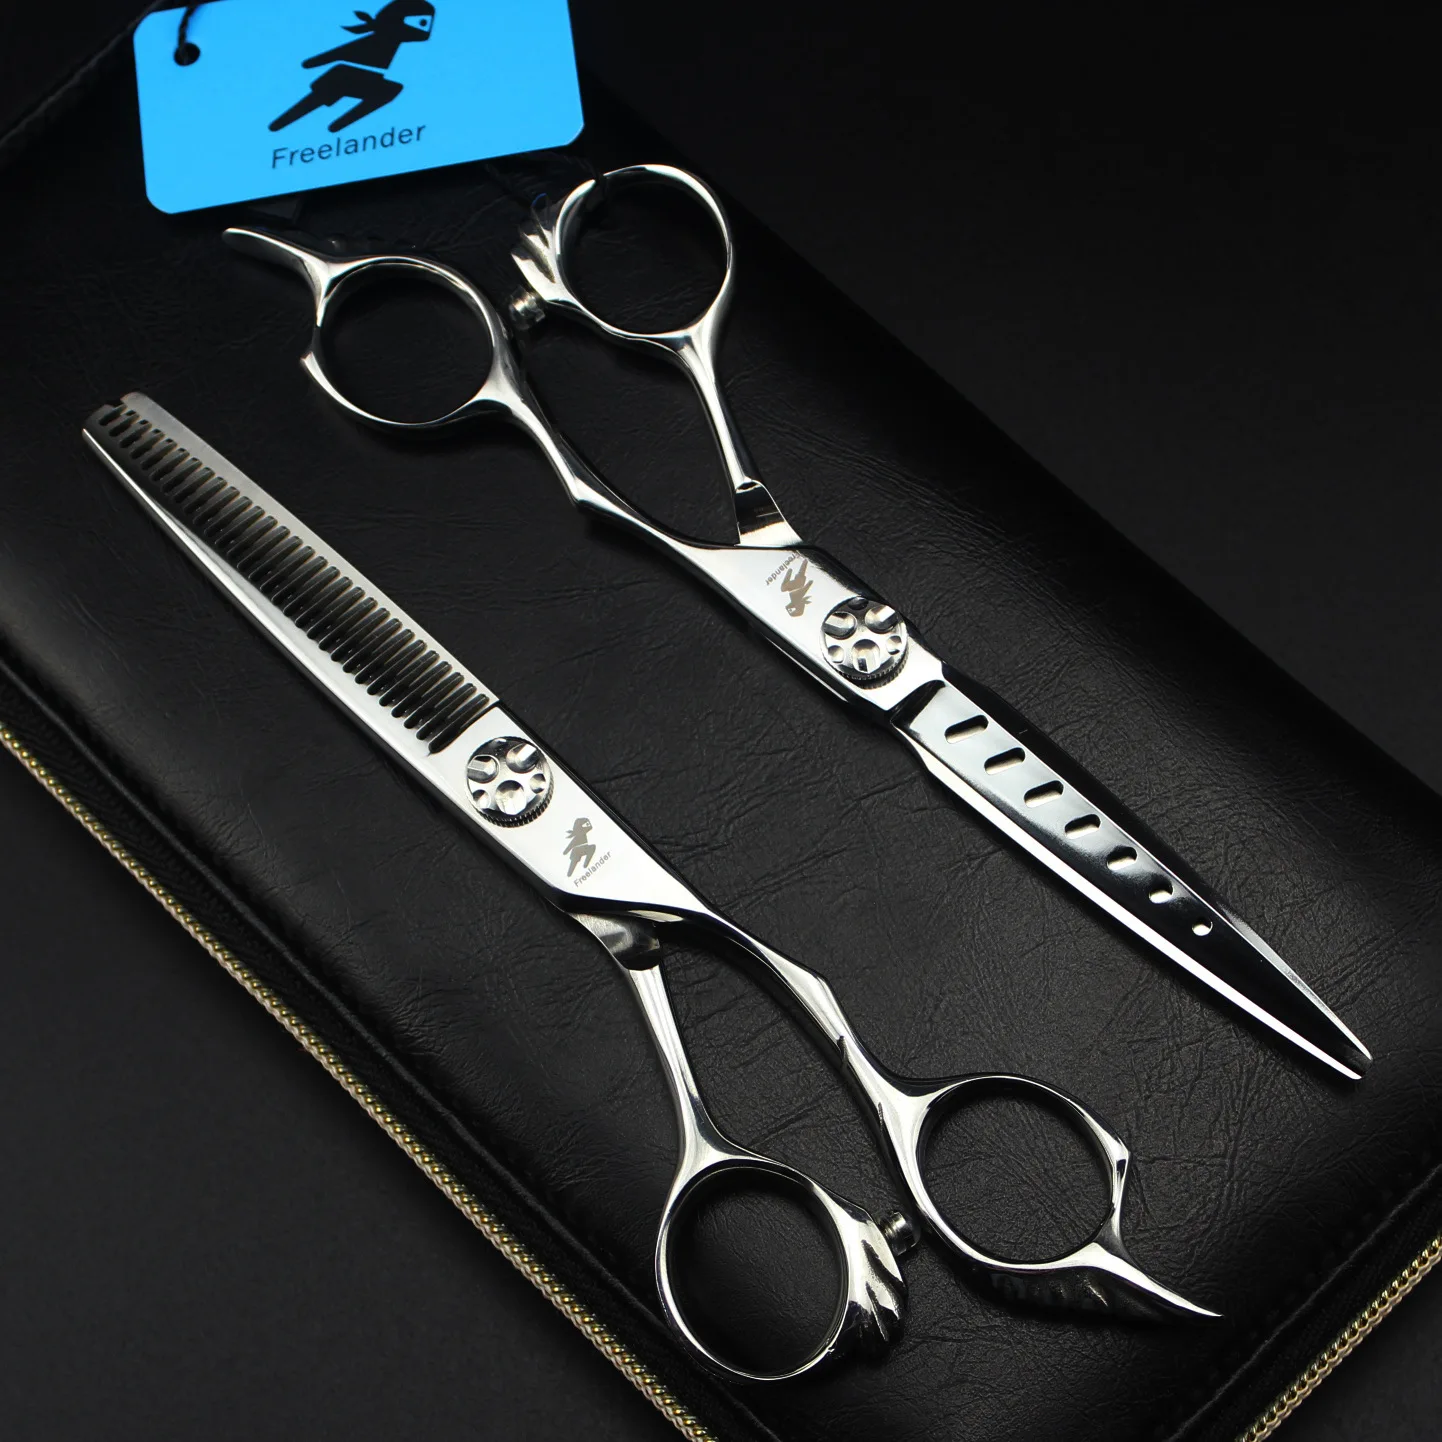 Профессиональные Парикмахерские ножницы для стрижки волос набор парикмахерских ножниц высокого качества салон 6,0 дюймов ножницы для волос с отверстием